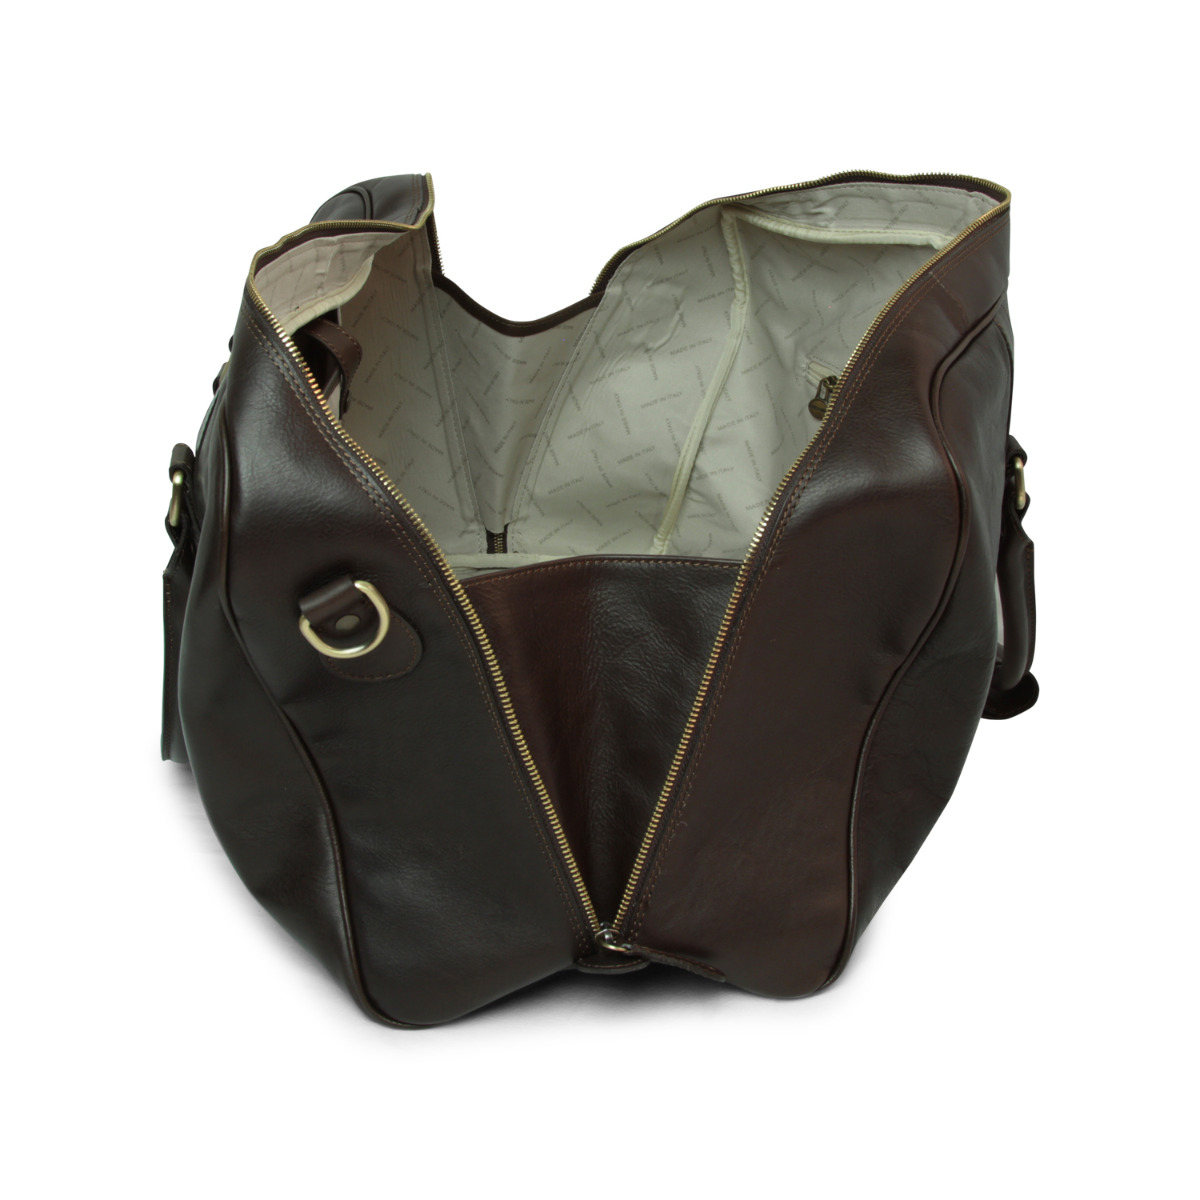 Full grain leather large travel bag - dark brown|414991TM|Old Angler Firenze